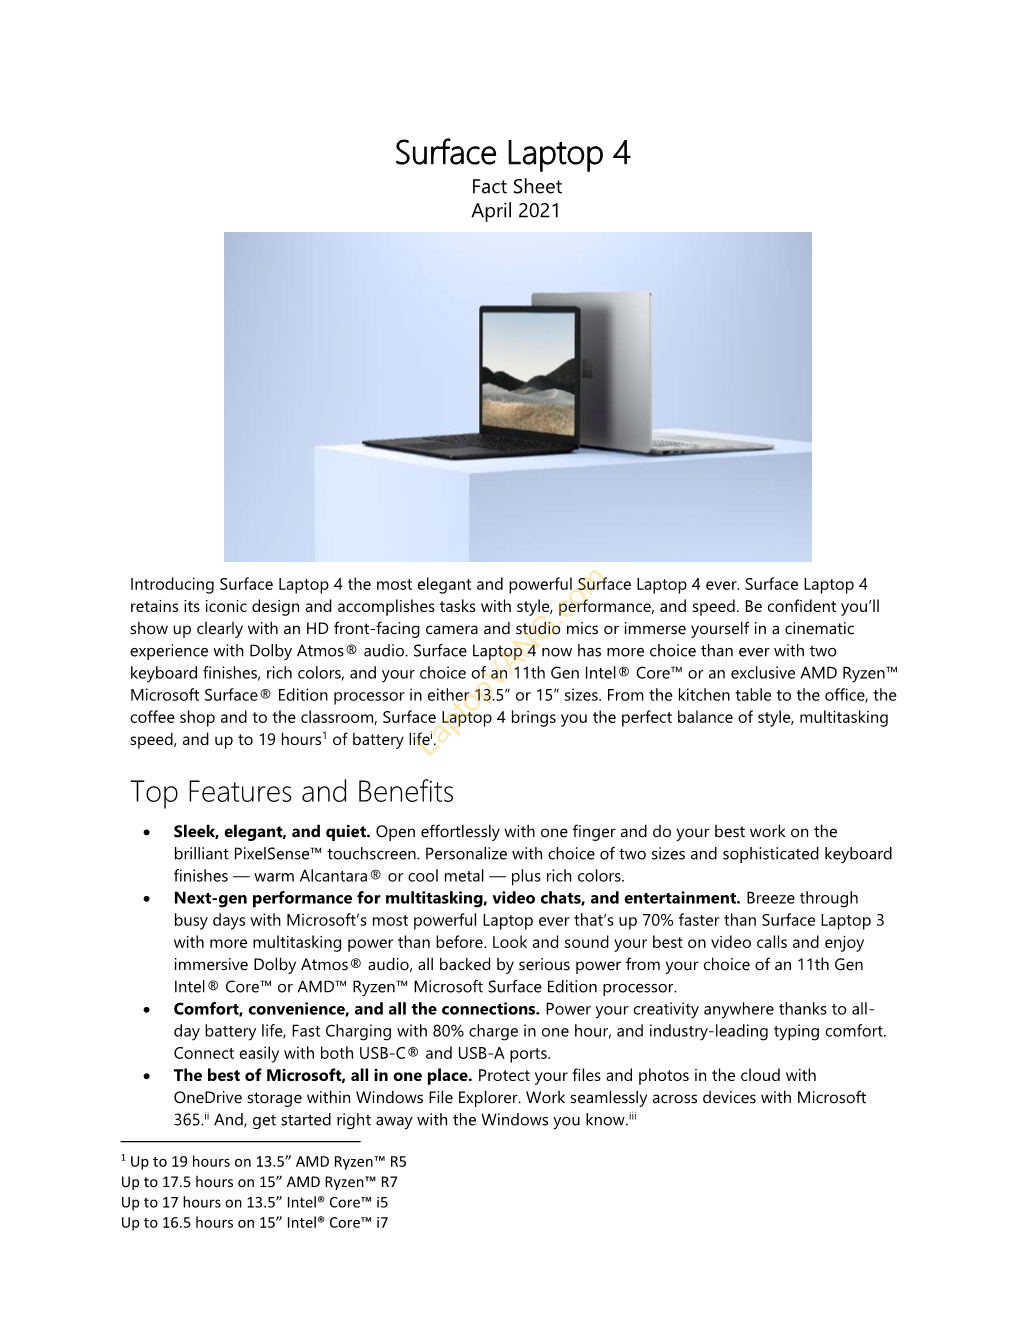 Surface Laptop 4 Fact Sheet April 2021